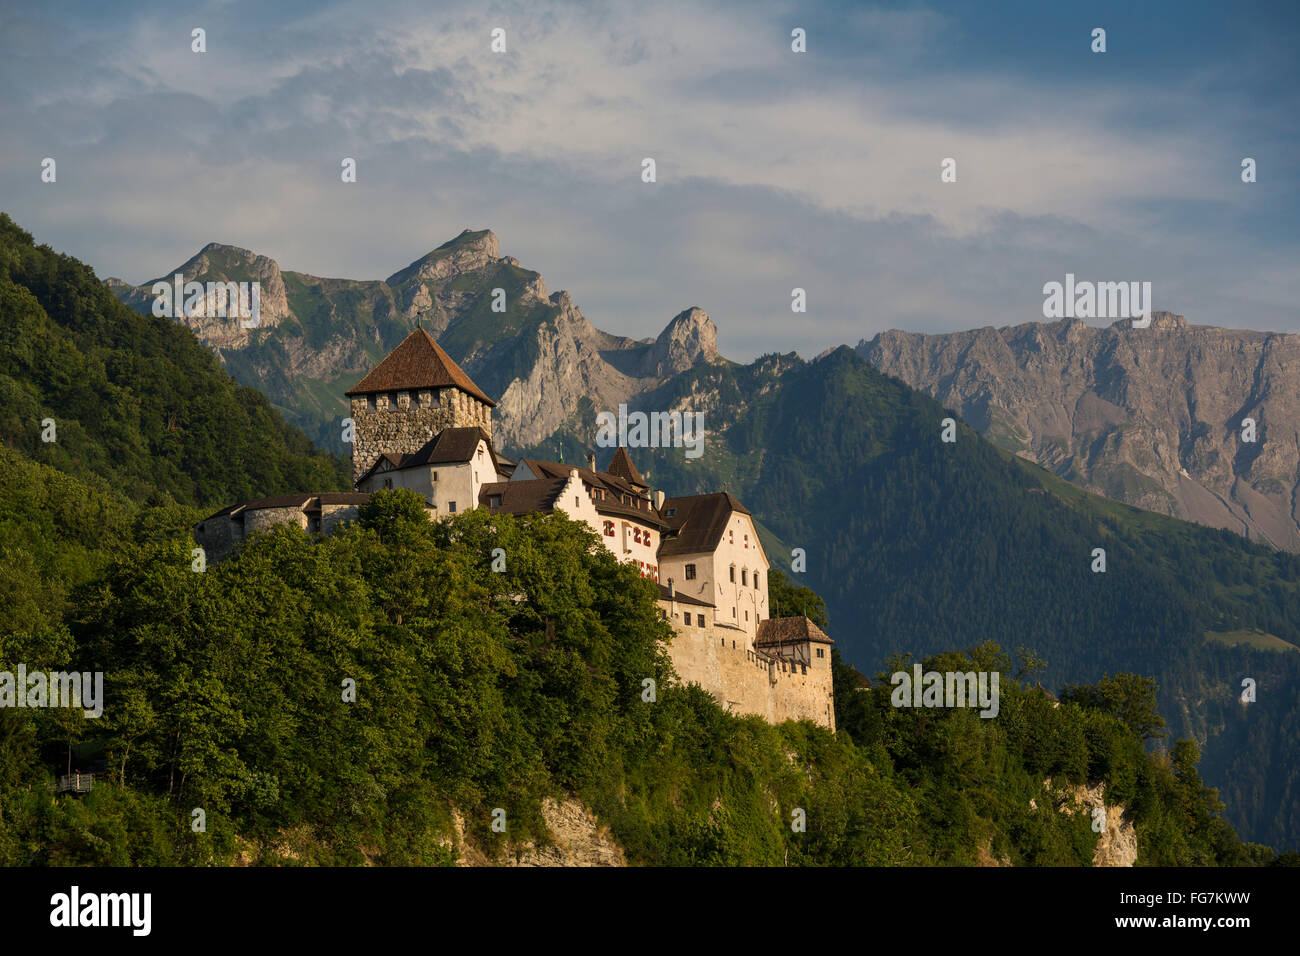 Castle of Vaduz, Schloss Vaduz, Rheintal, Rhine-valley, Liechtenstein. Stock Photo